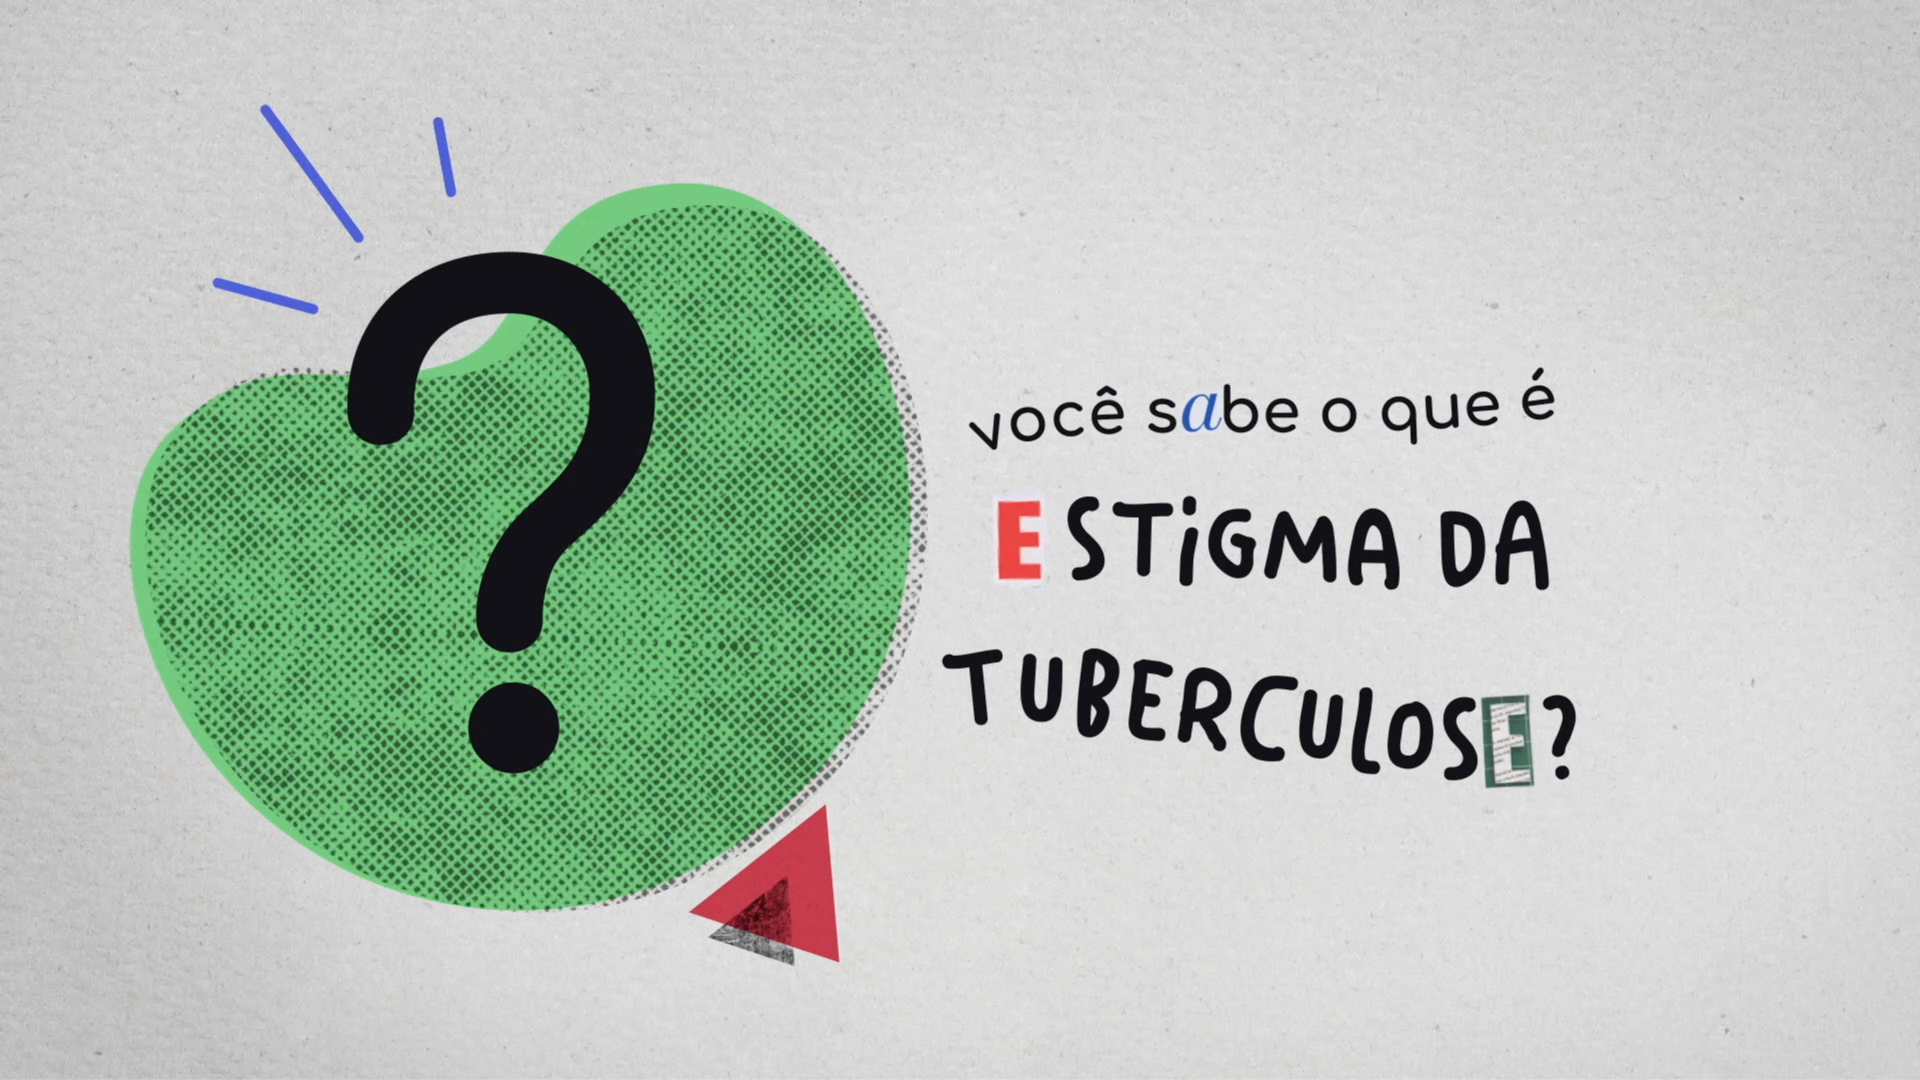 infelizmente somos humanos on X: Um te passa tuberculose logo / X